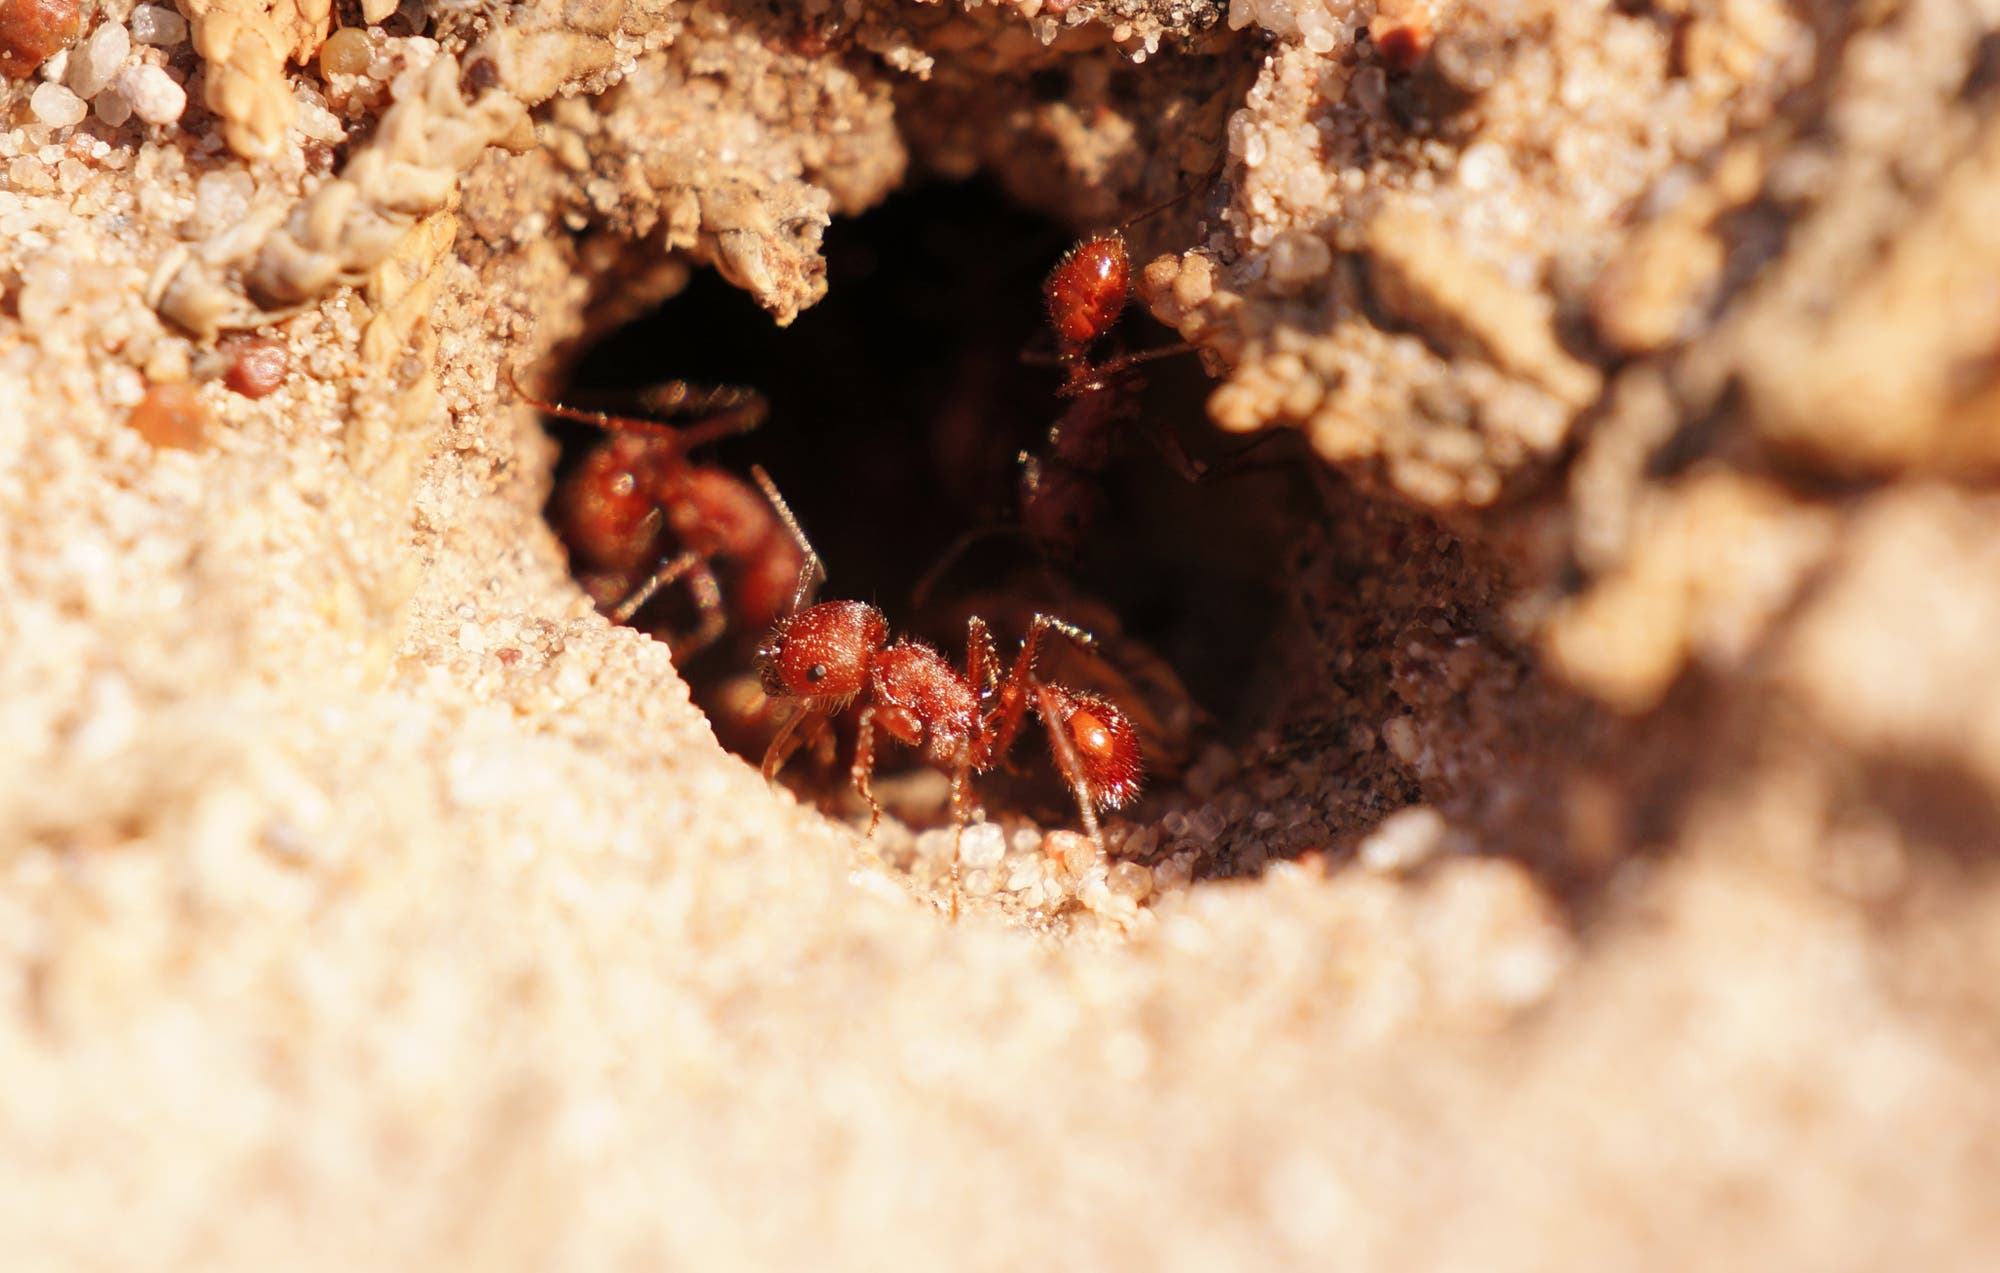 Eine kleine rote Ameise in einem Loch im Sand, das in einen Bau hinabführt